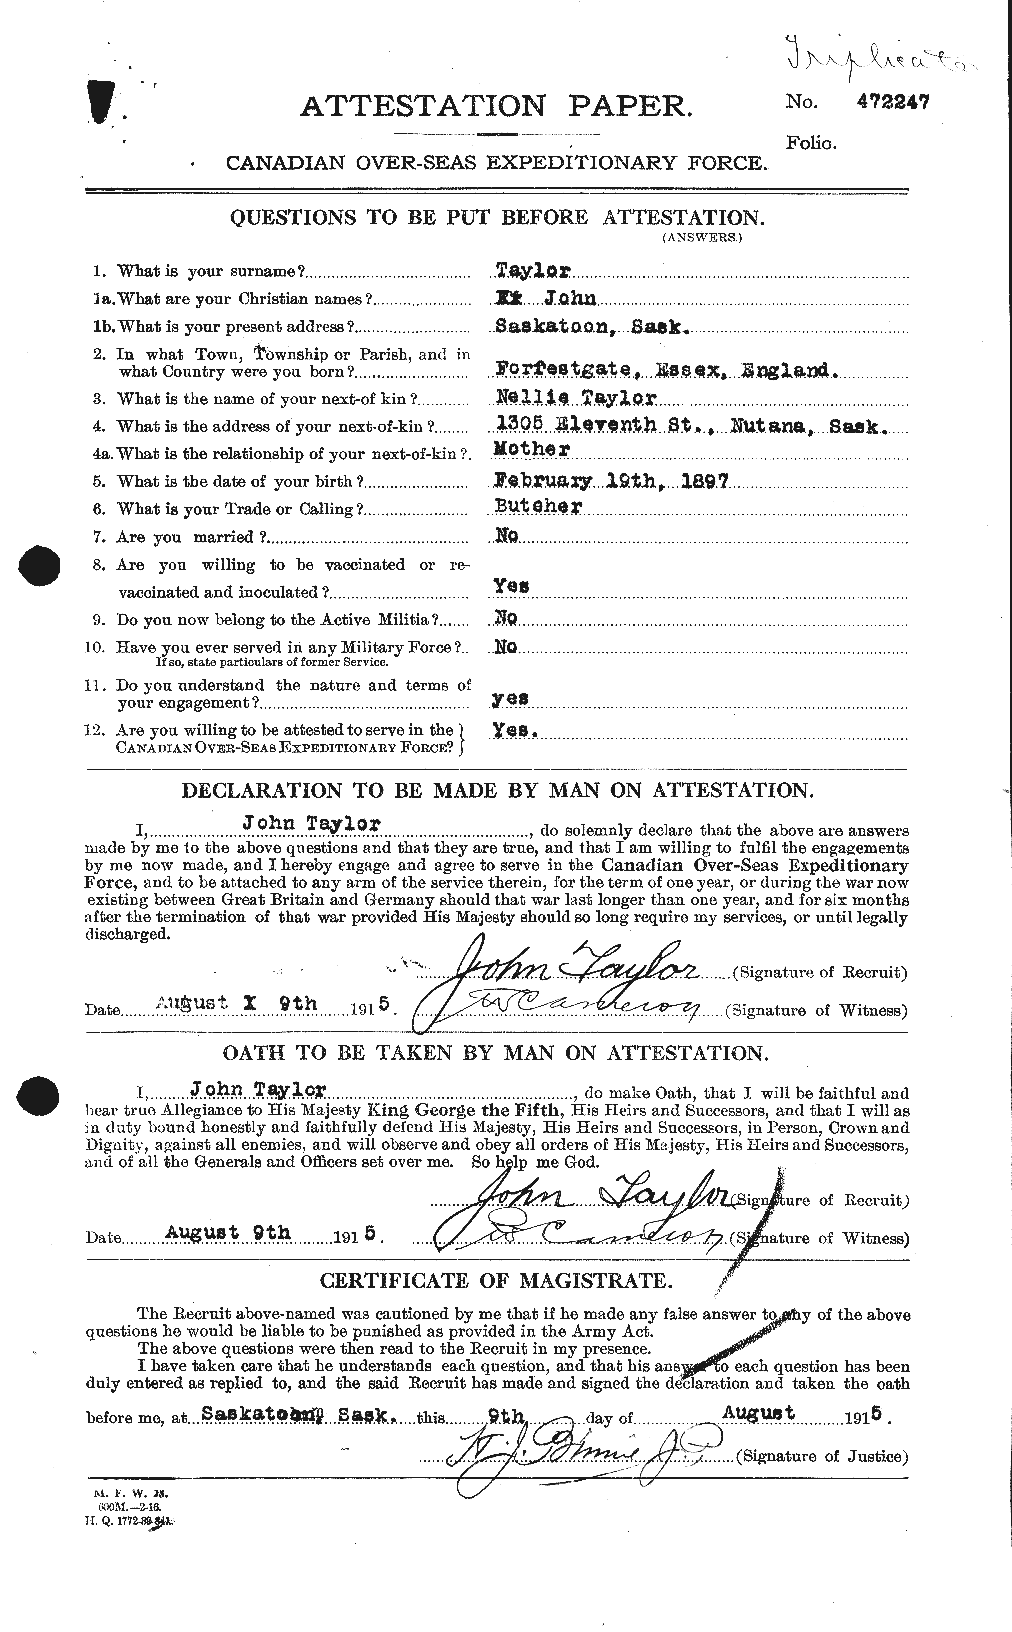 Dossiers du Personnel de la Première Guerre mondiale - CEC 627010a